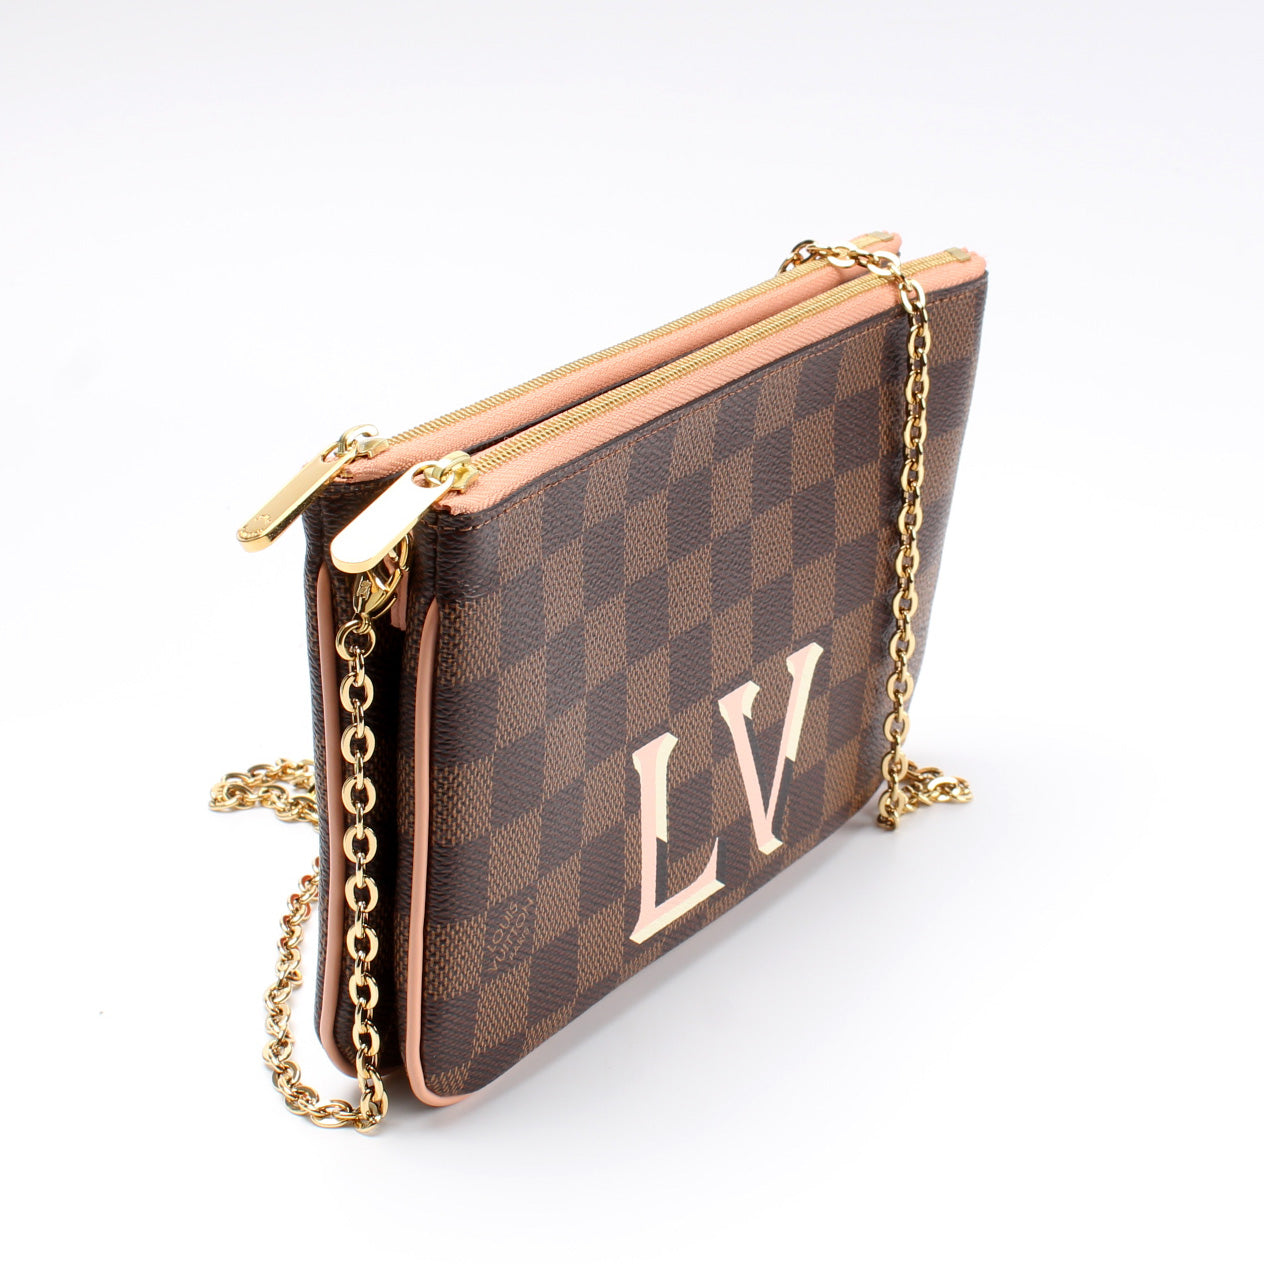 Louis Vuitton Damier Ebene Canvas Double Zip Pochette Bag